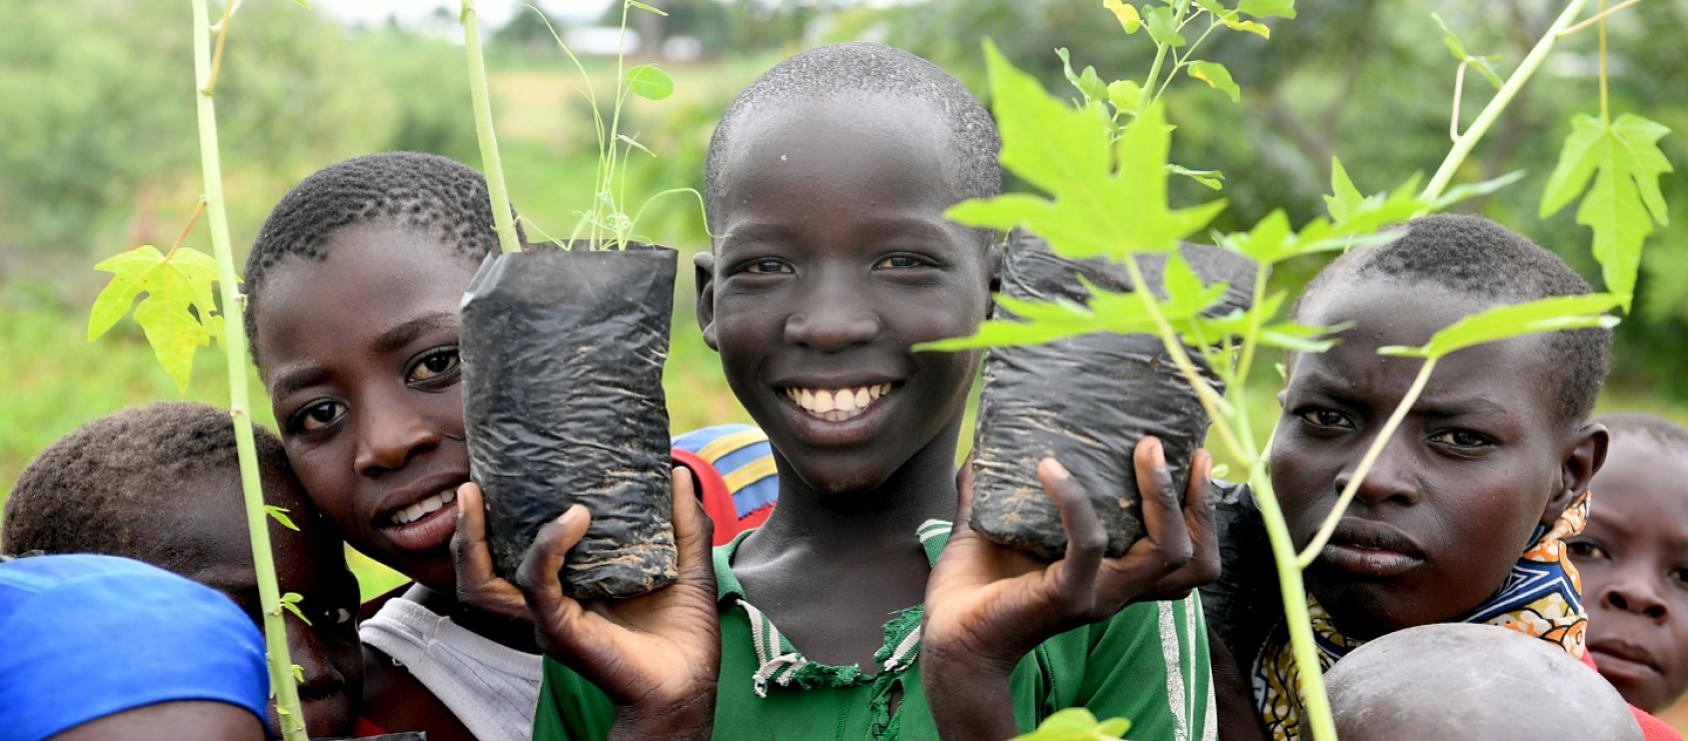 أطفال في الكاميرون يحملون نباتات صغيرة وينظرون إلى الكاميرا بابتسامة كبيرة على وجوههم.